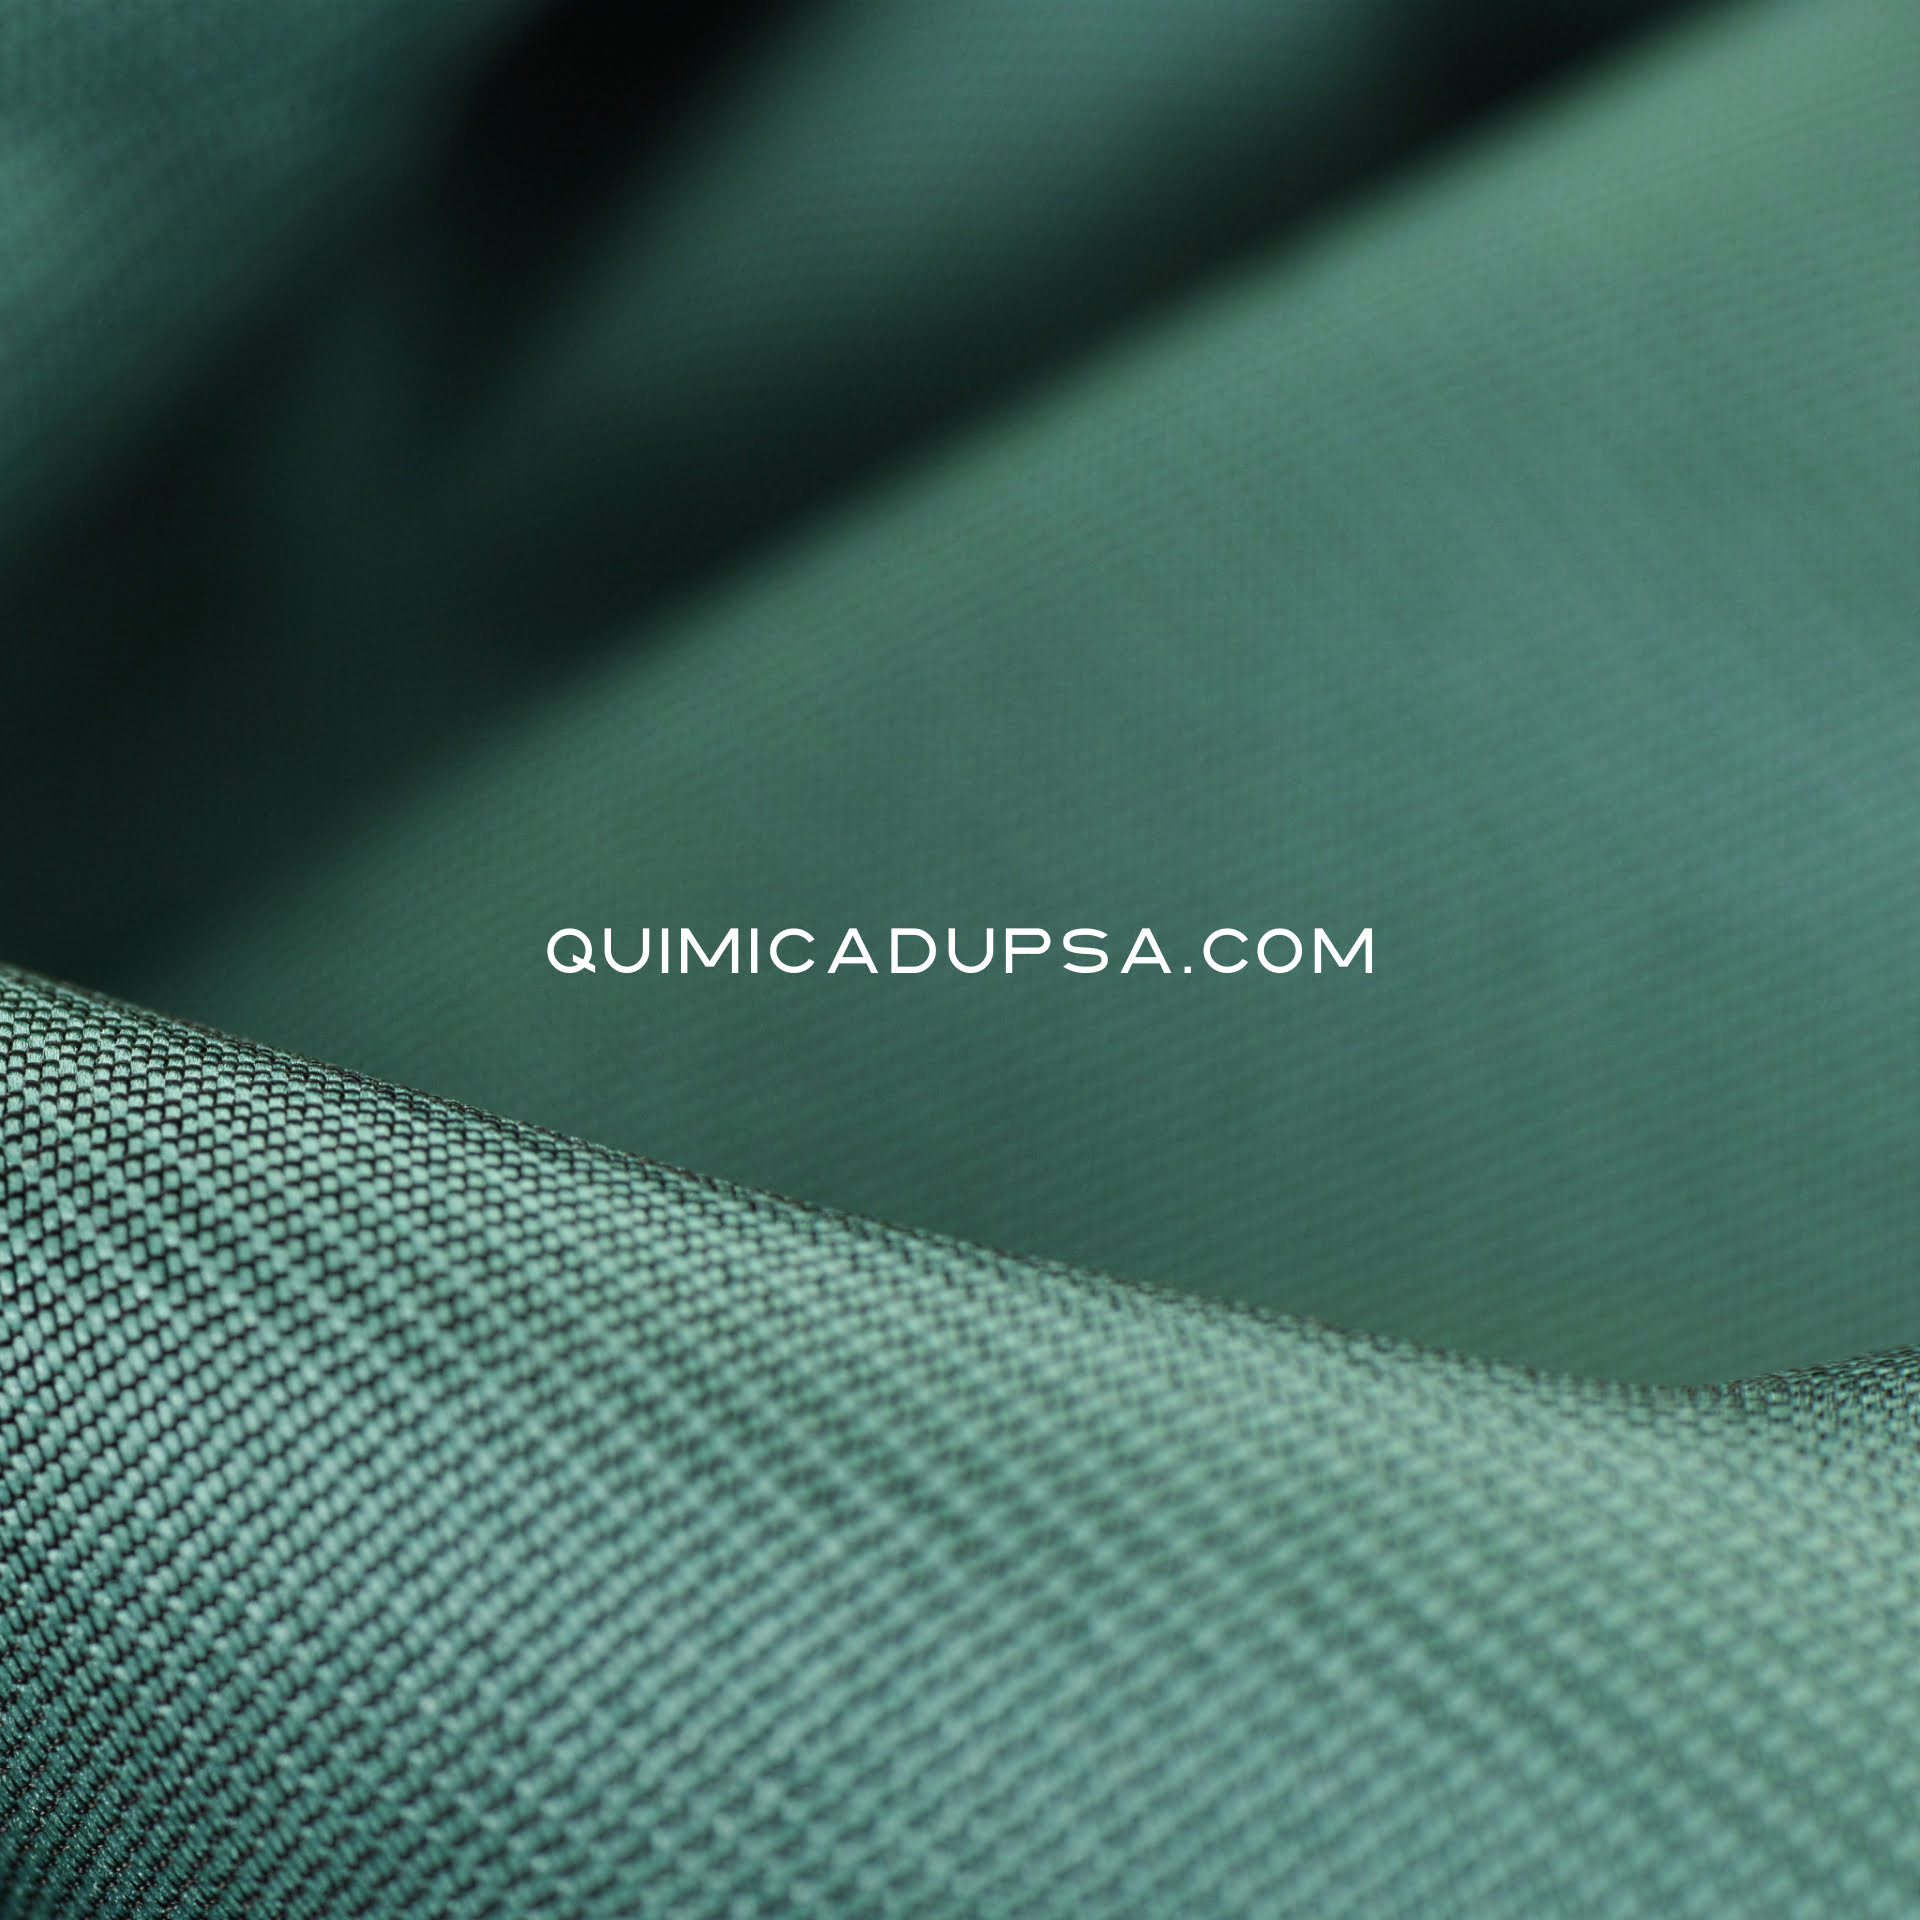 qd-ad-pigmentos-textiles 8